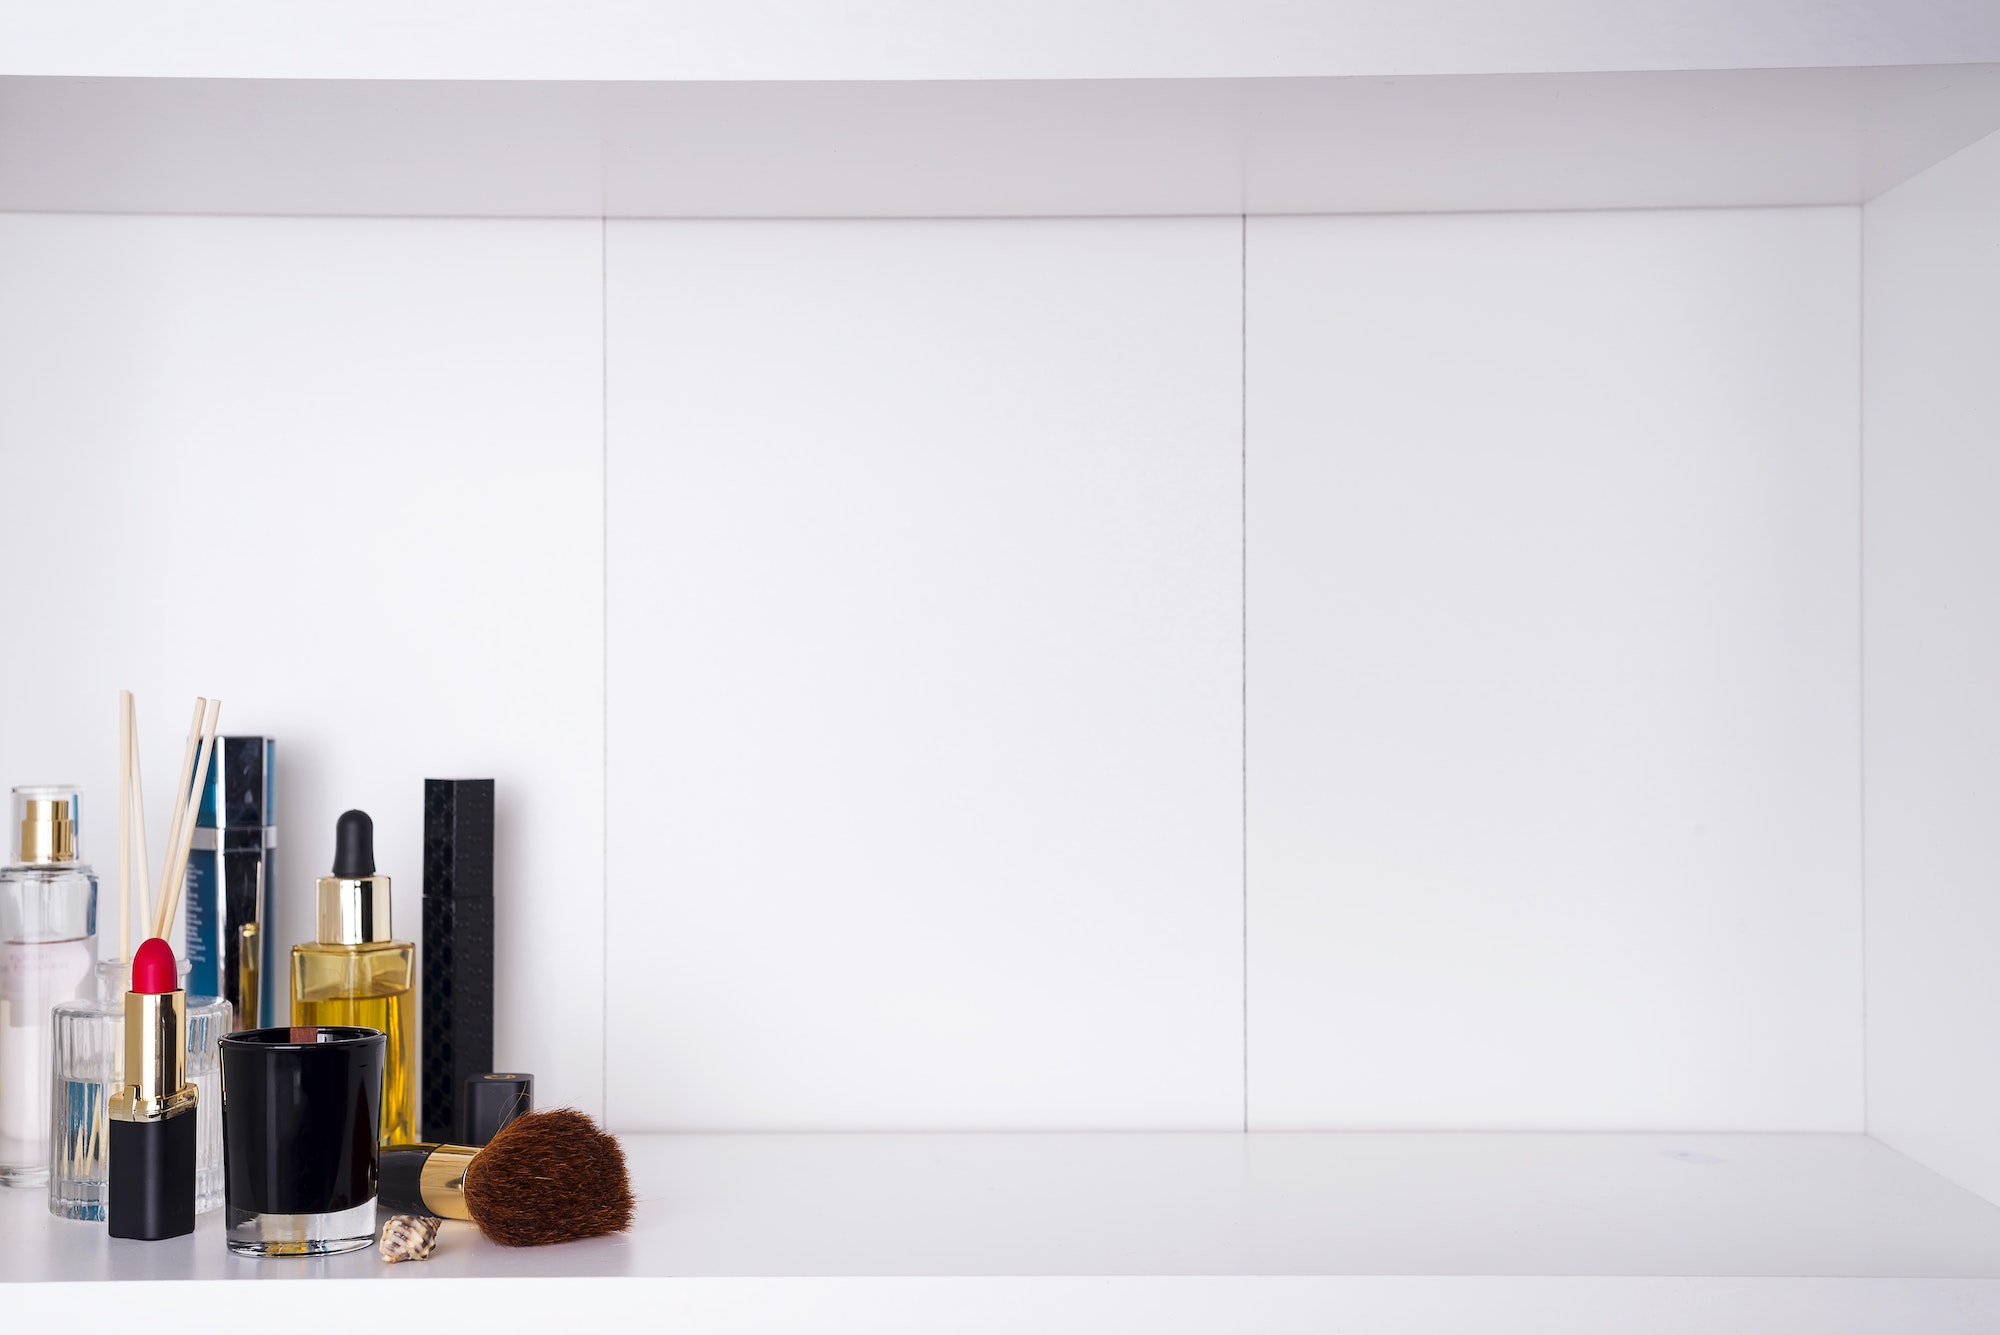 cosmetics in bathroom on a white bathroom shelf